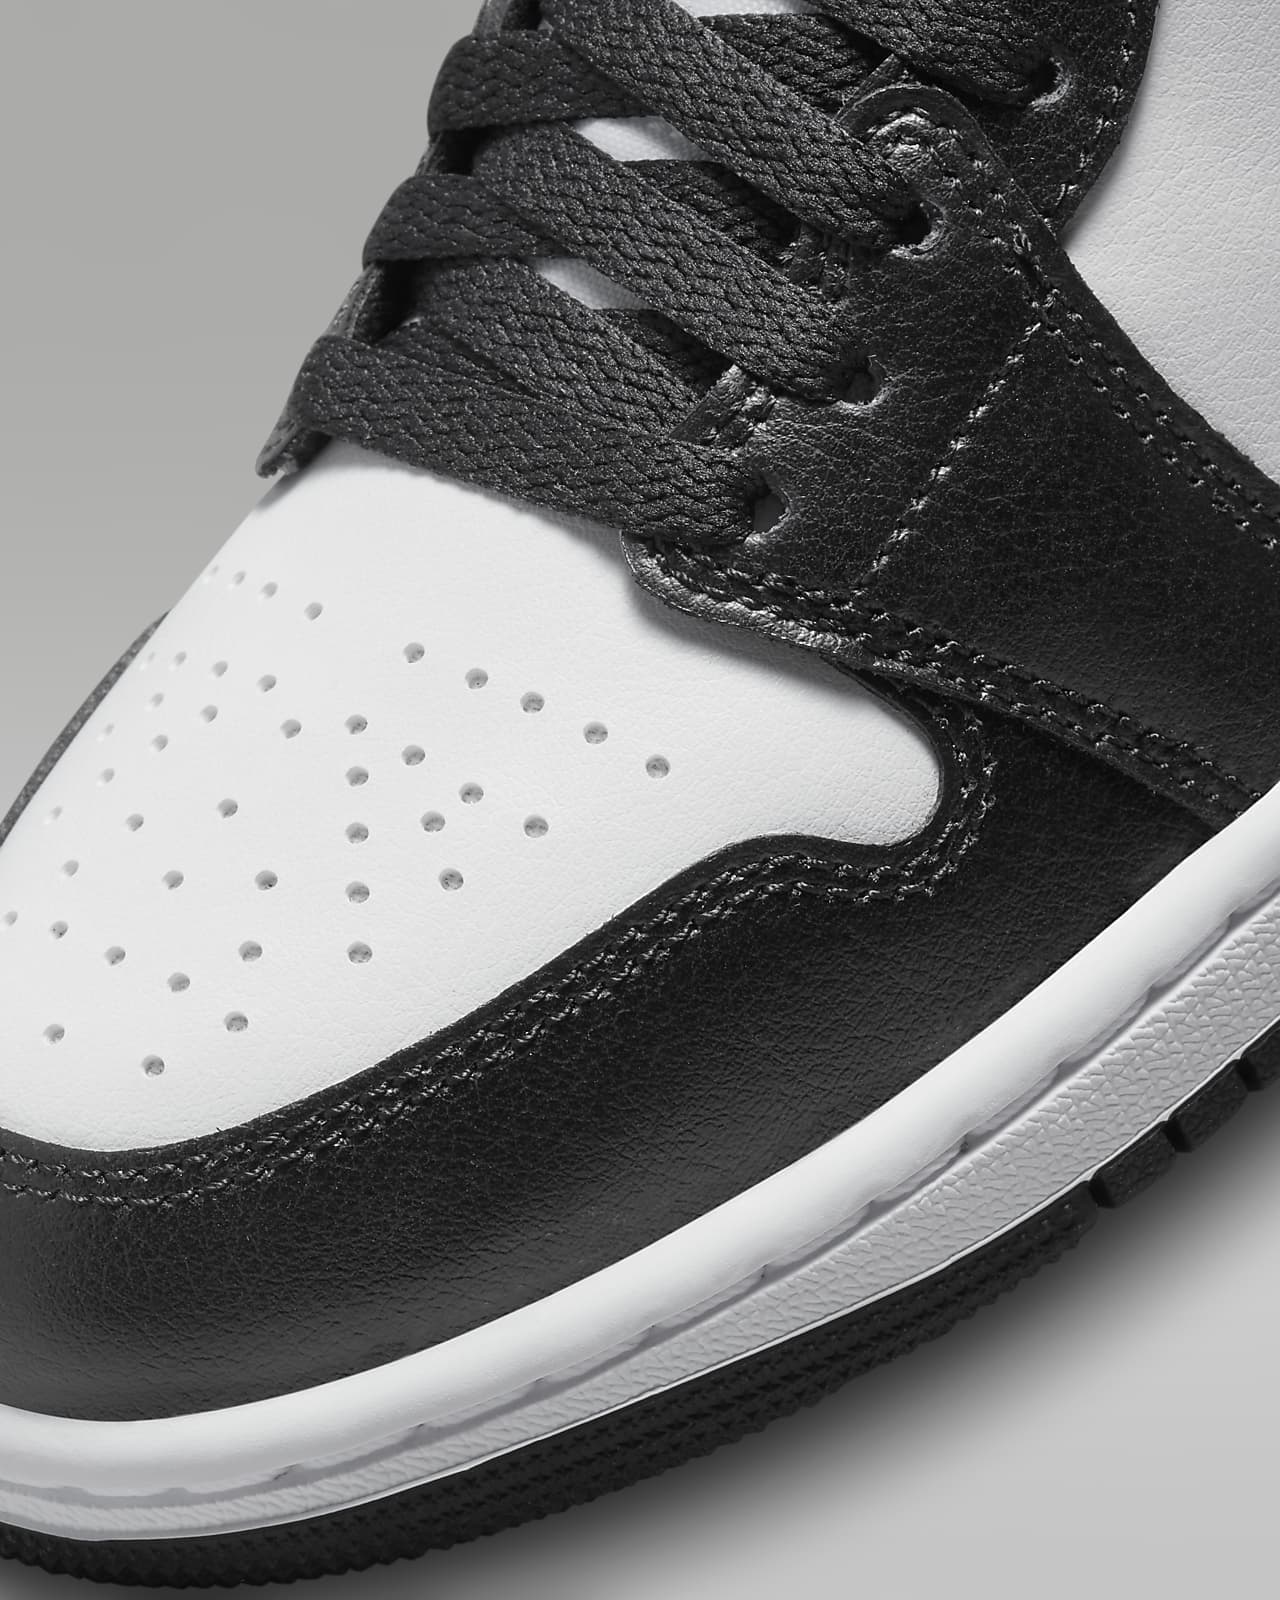 Jordan Air Jordan 1 Retro High OG Panda Sneakers - Black for Women